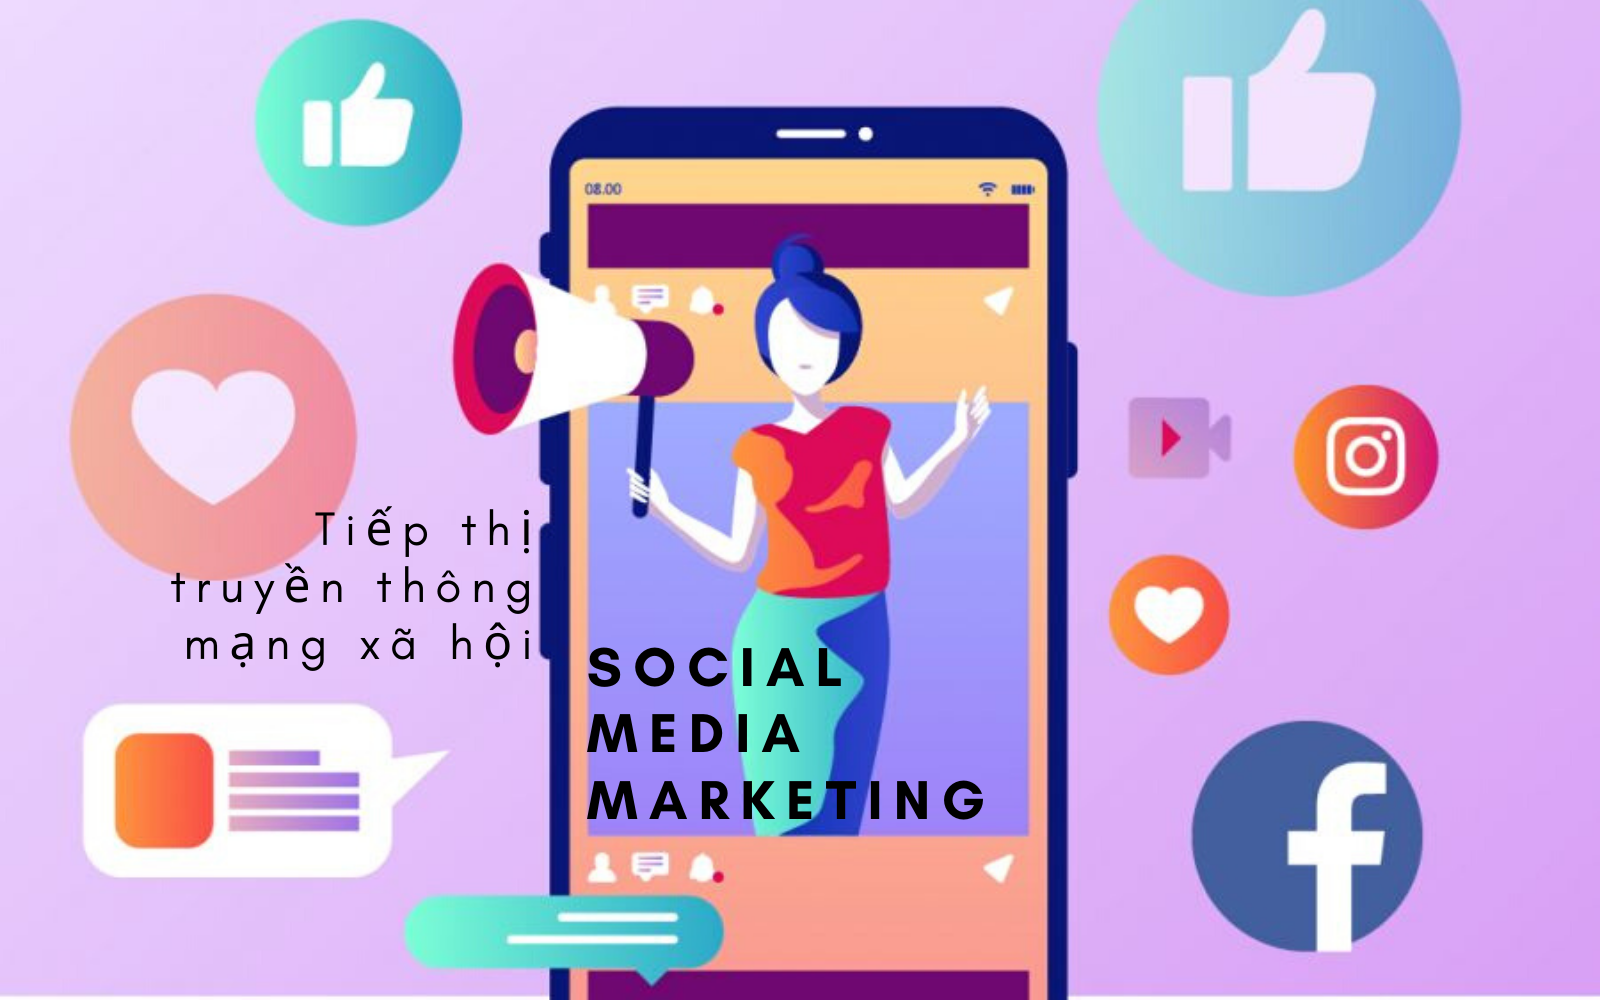 Tiếp thị truyền thông mạng xã hội (Social Media Marketing) là gì?